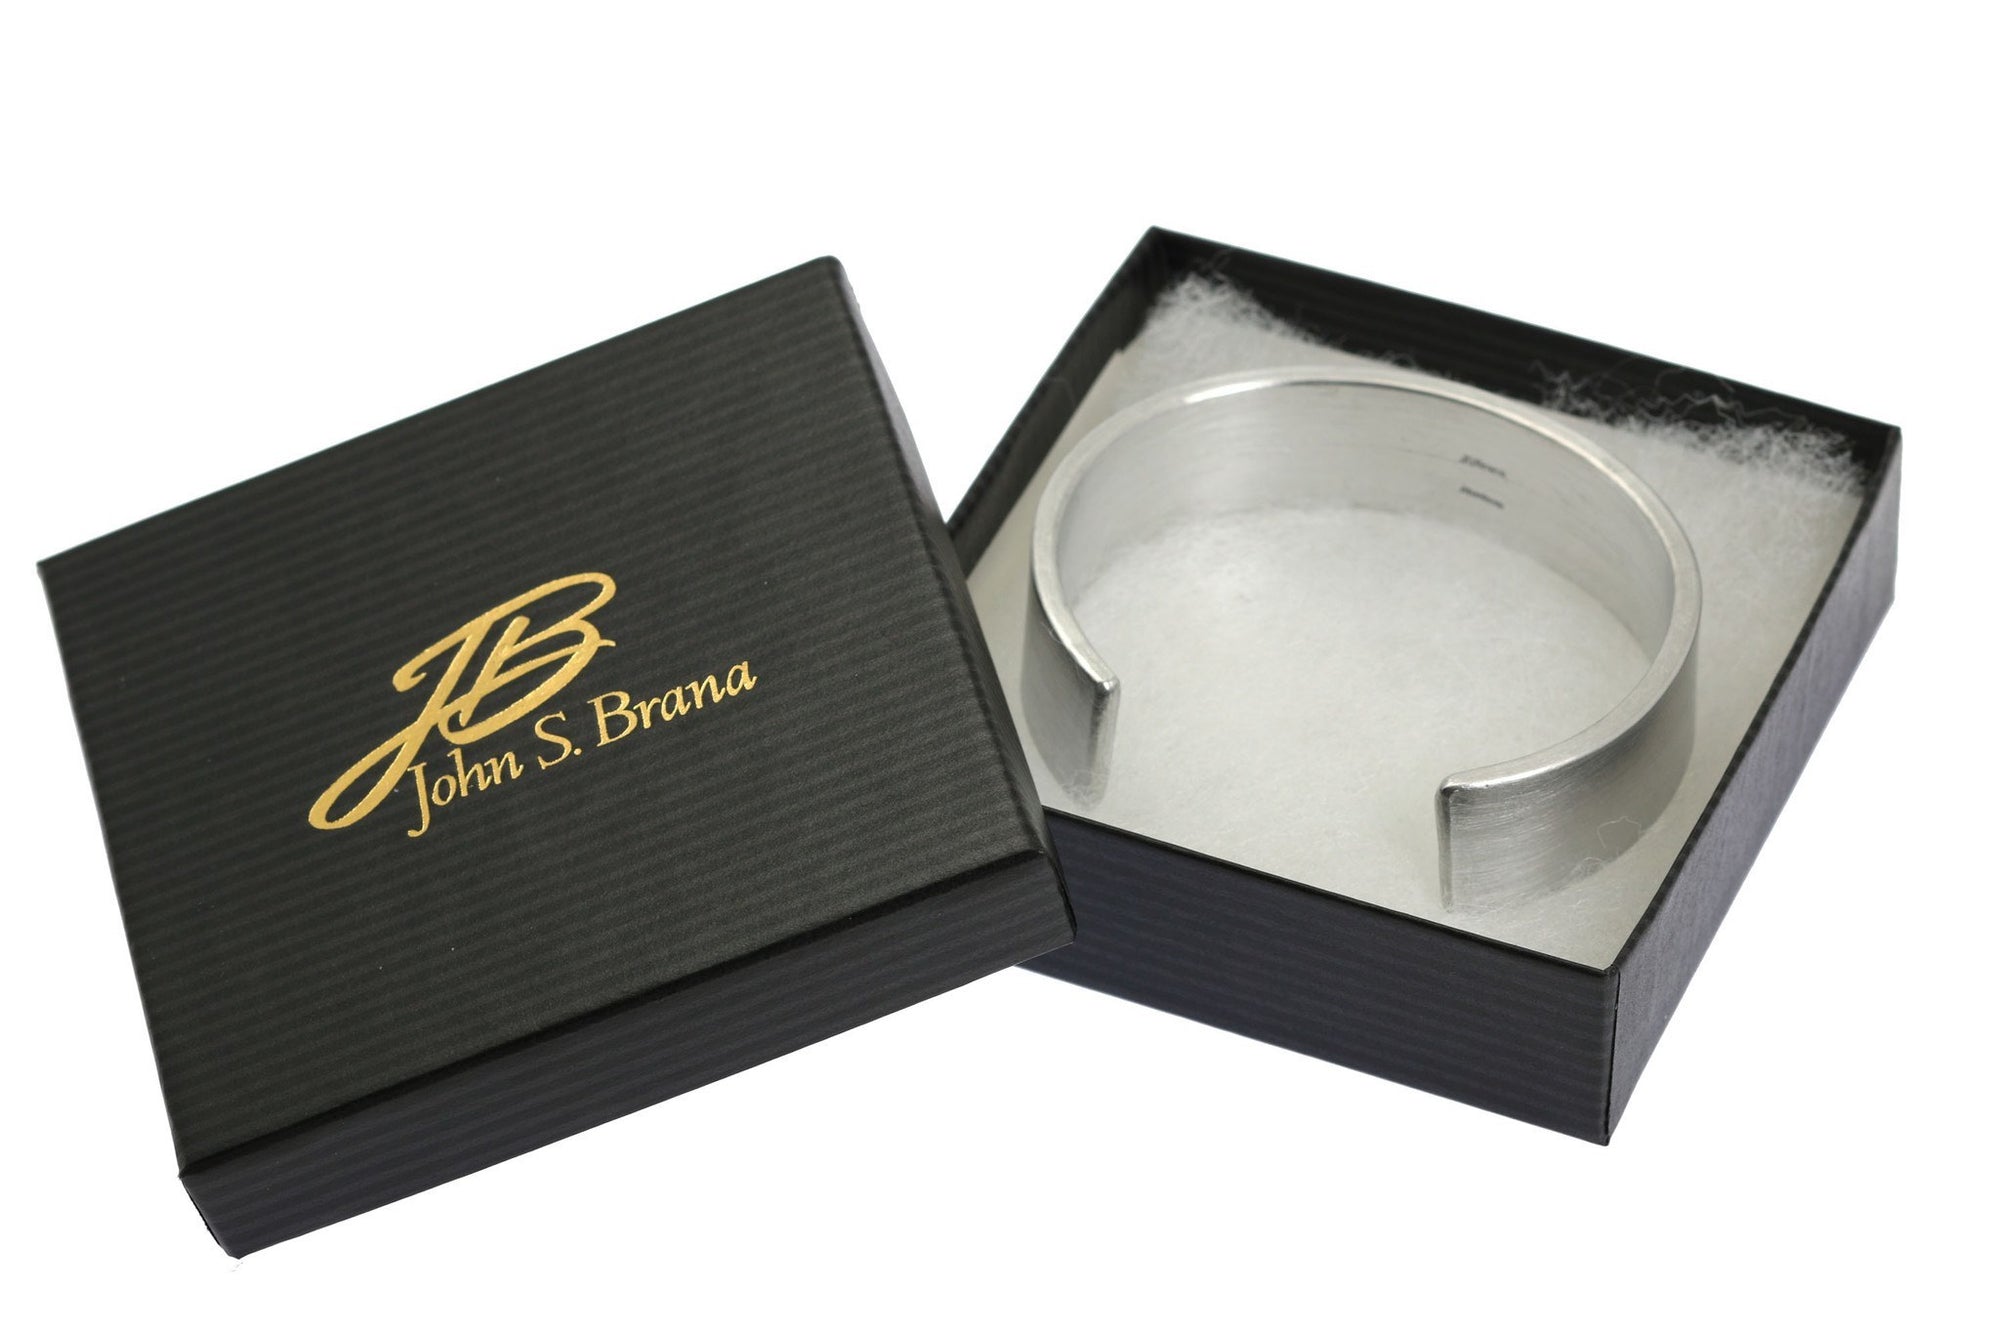 19mm Brushed Aluminum Cuff Bracelet in Black Gift Box